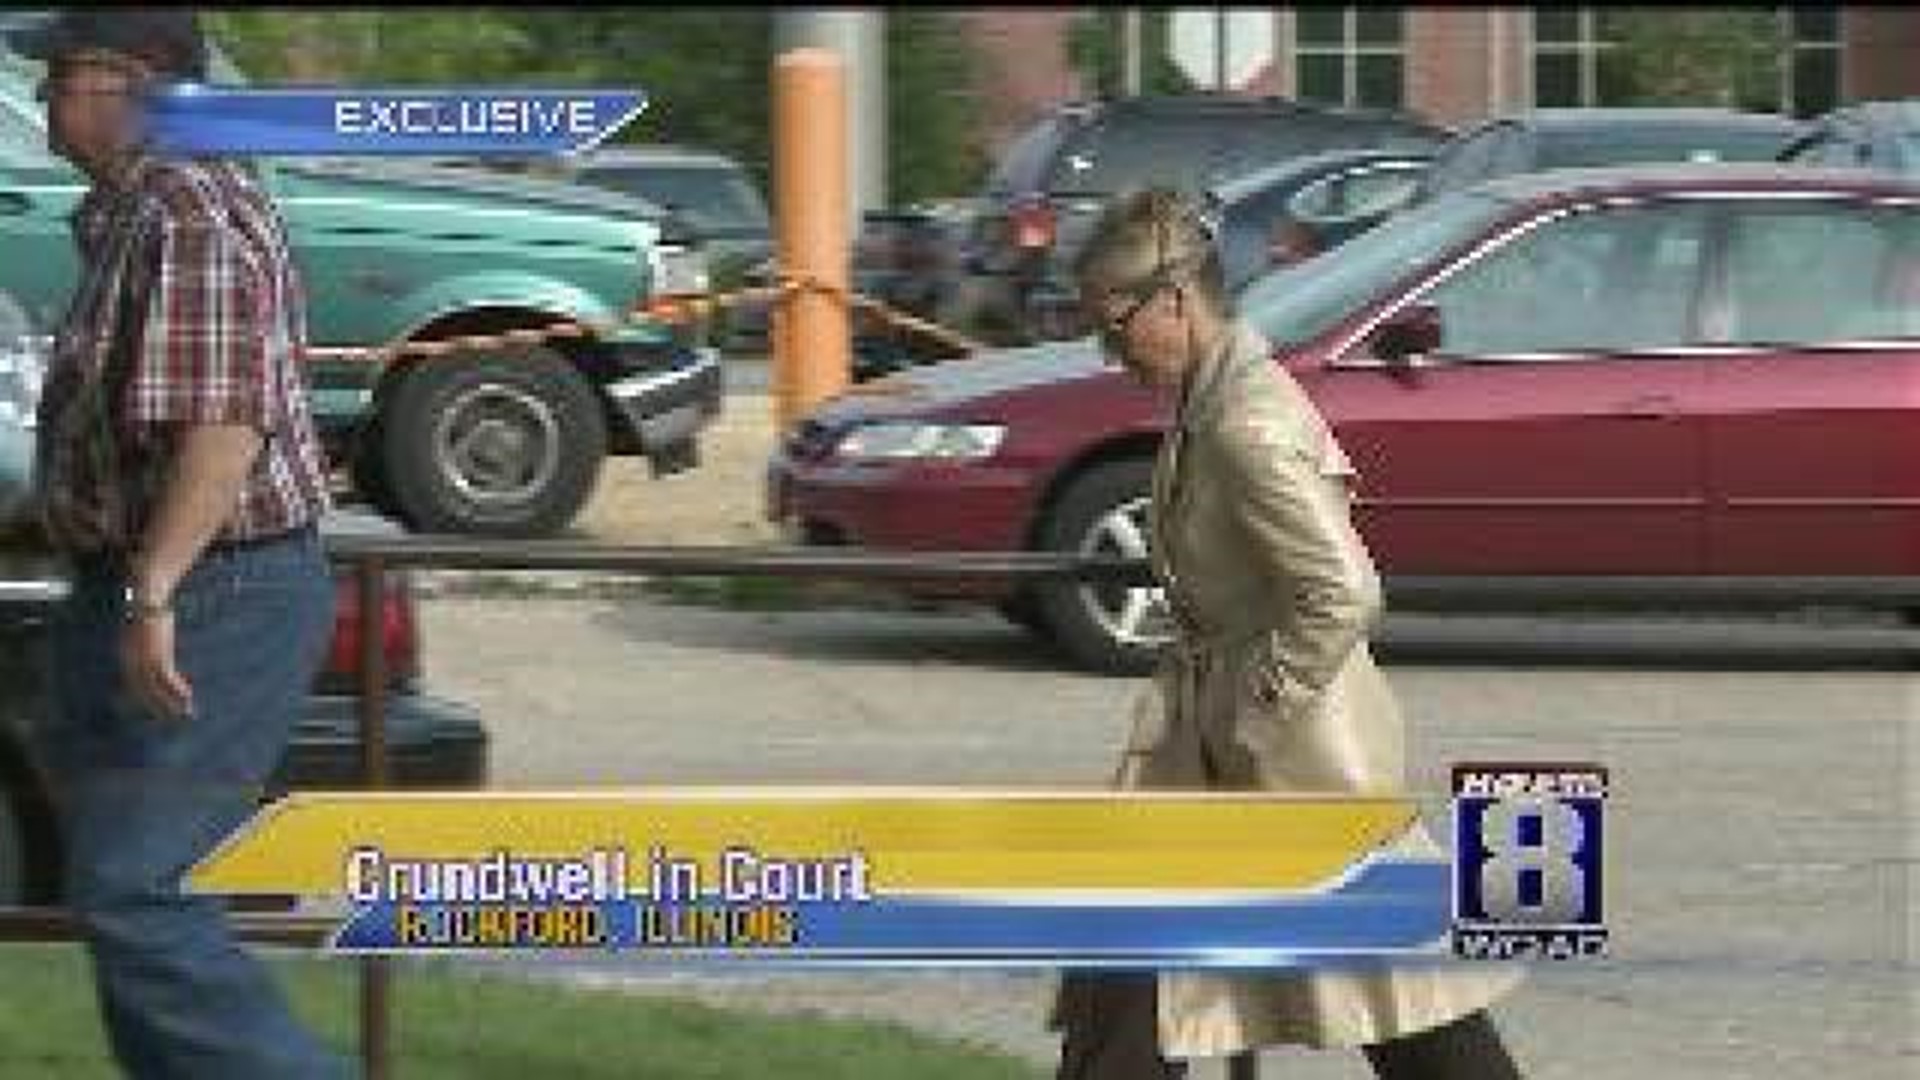 Crundwell in court